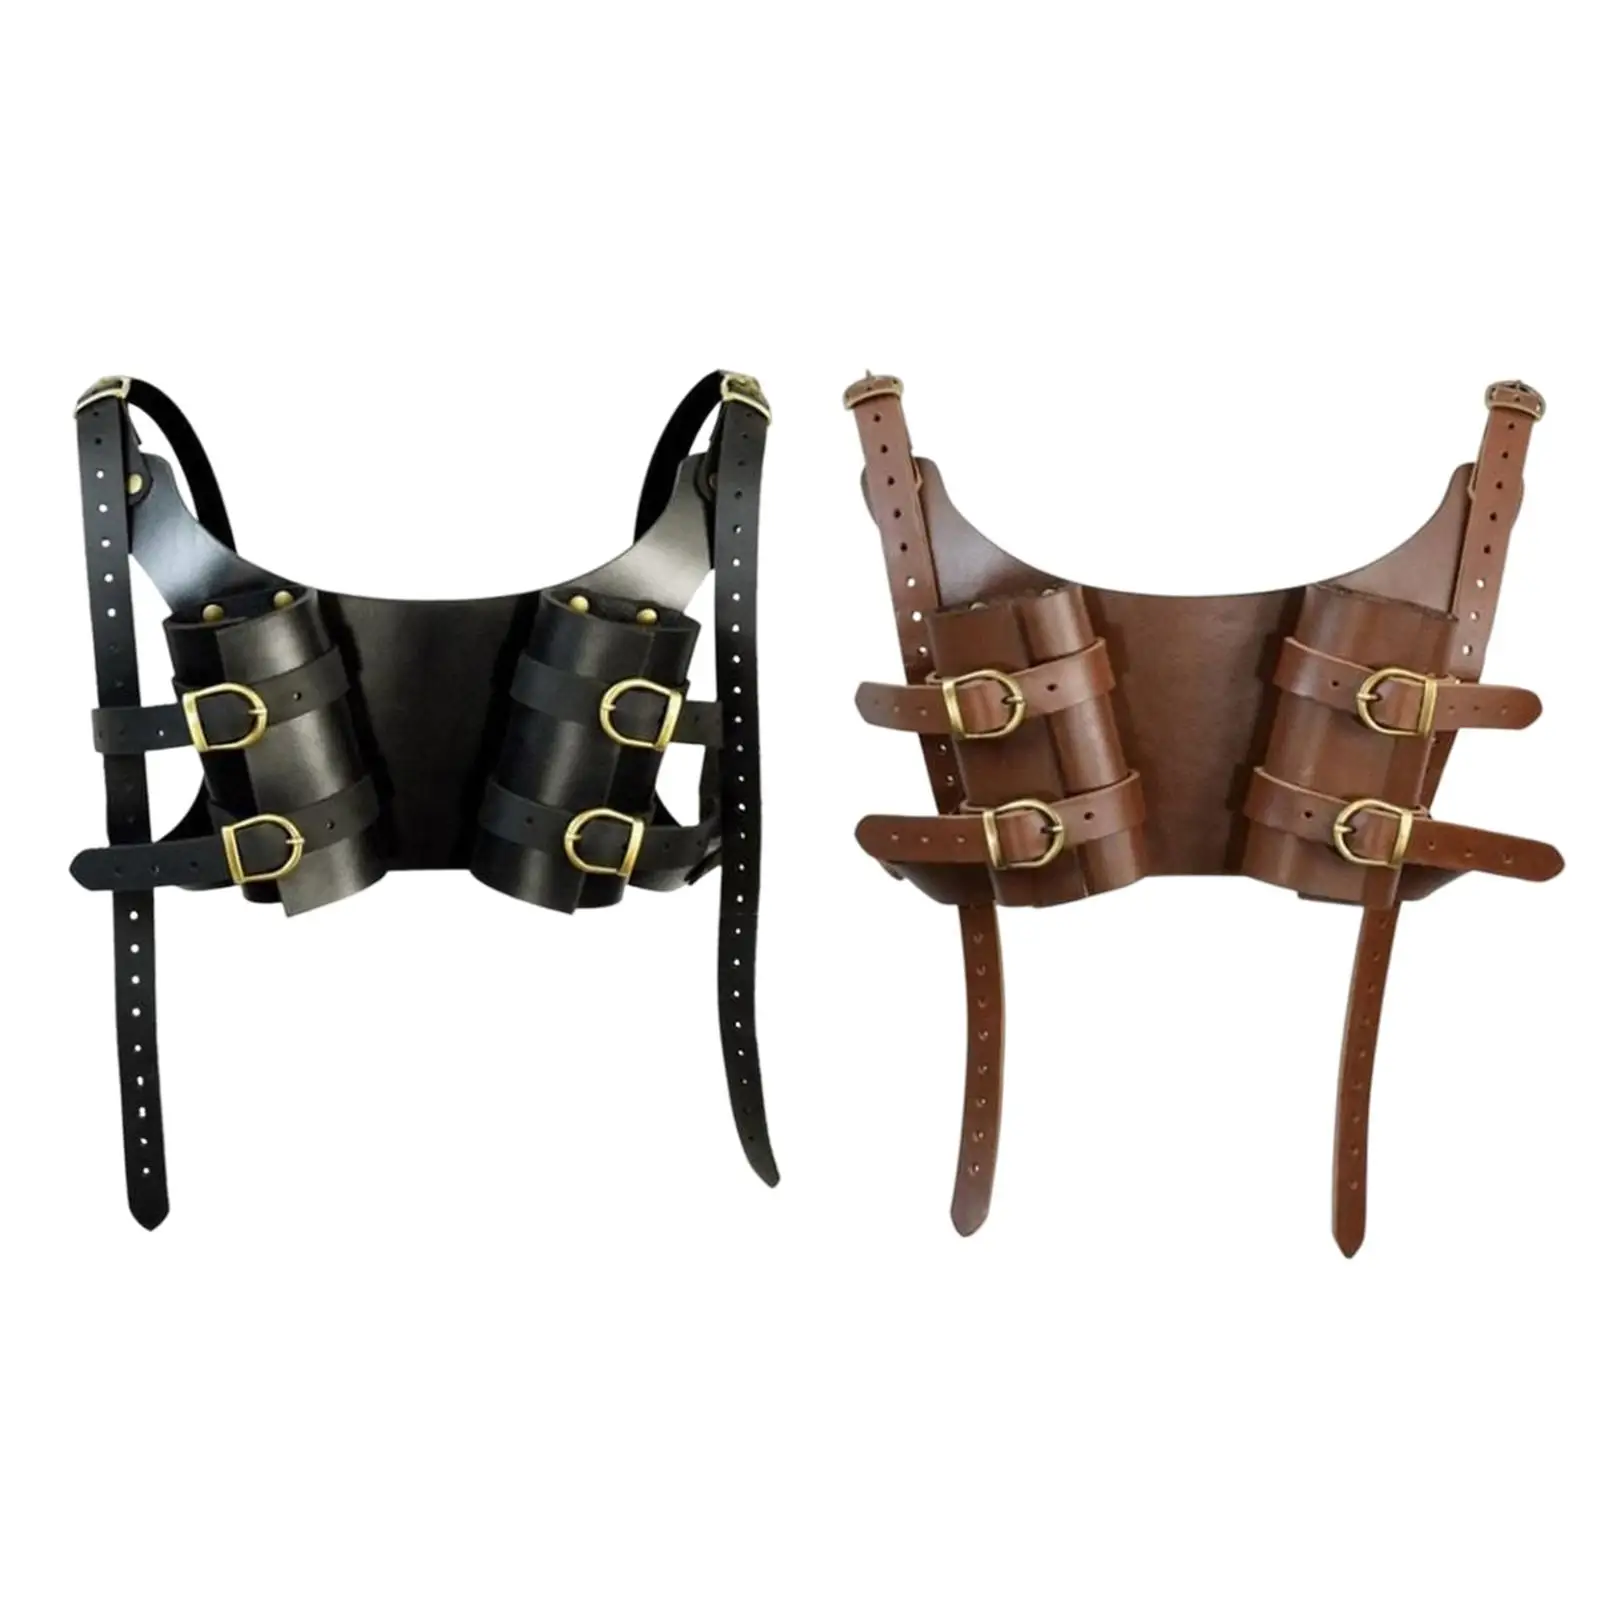 Dual Sheath Vintage Shoulder Belt Cosplay Costume Props Sheath Medieval Shoulder Belt for Pirate Cosplay Knight Adult